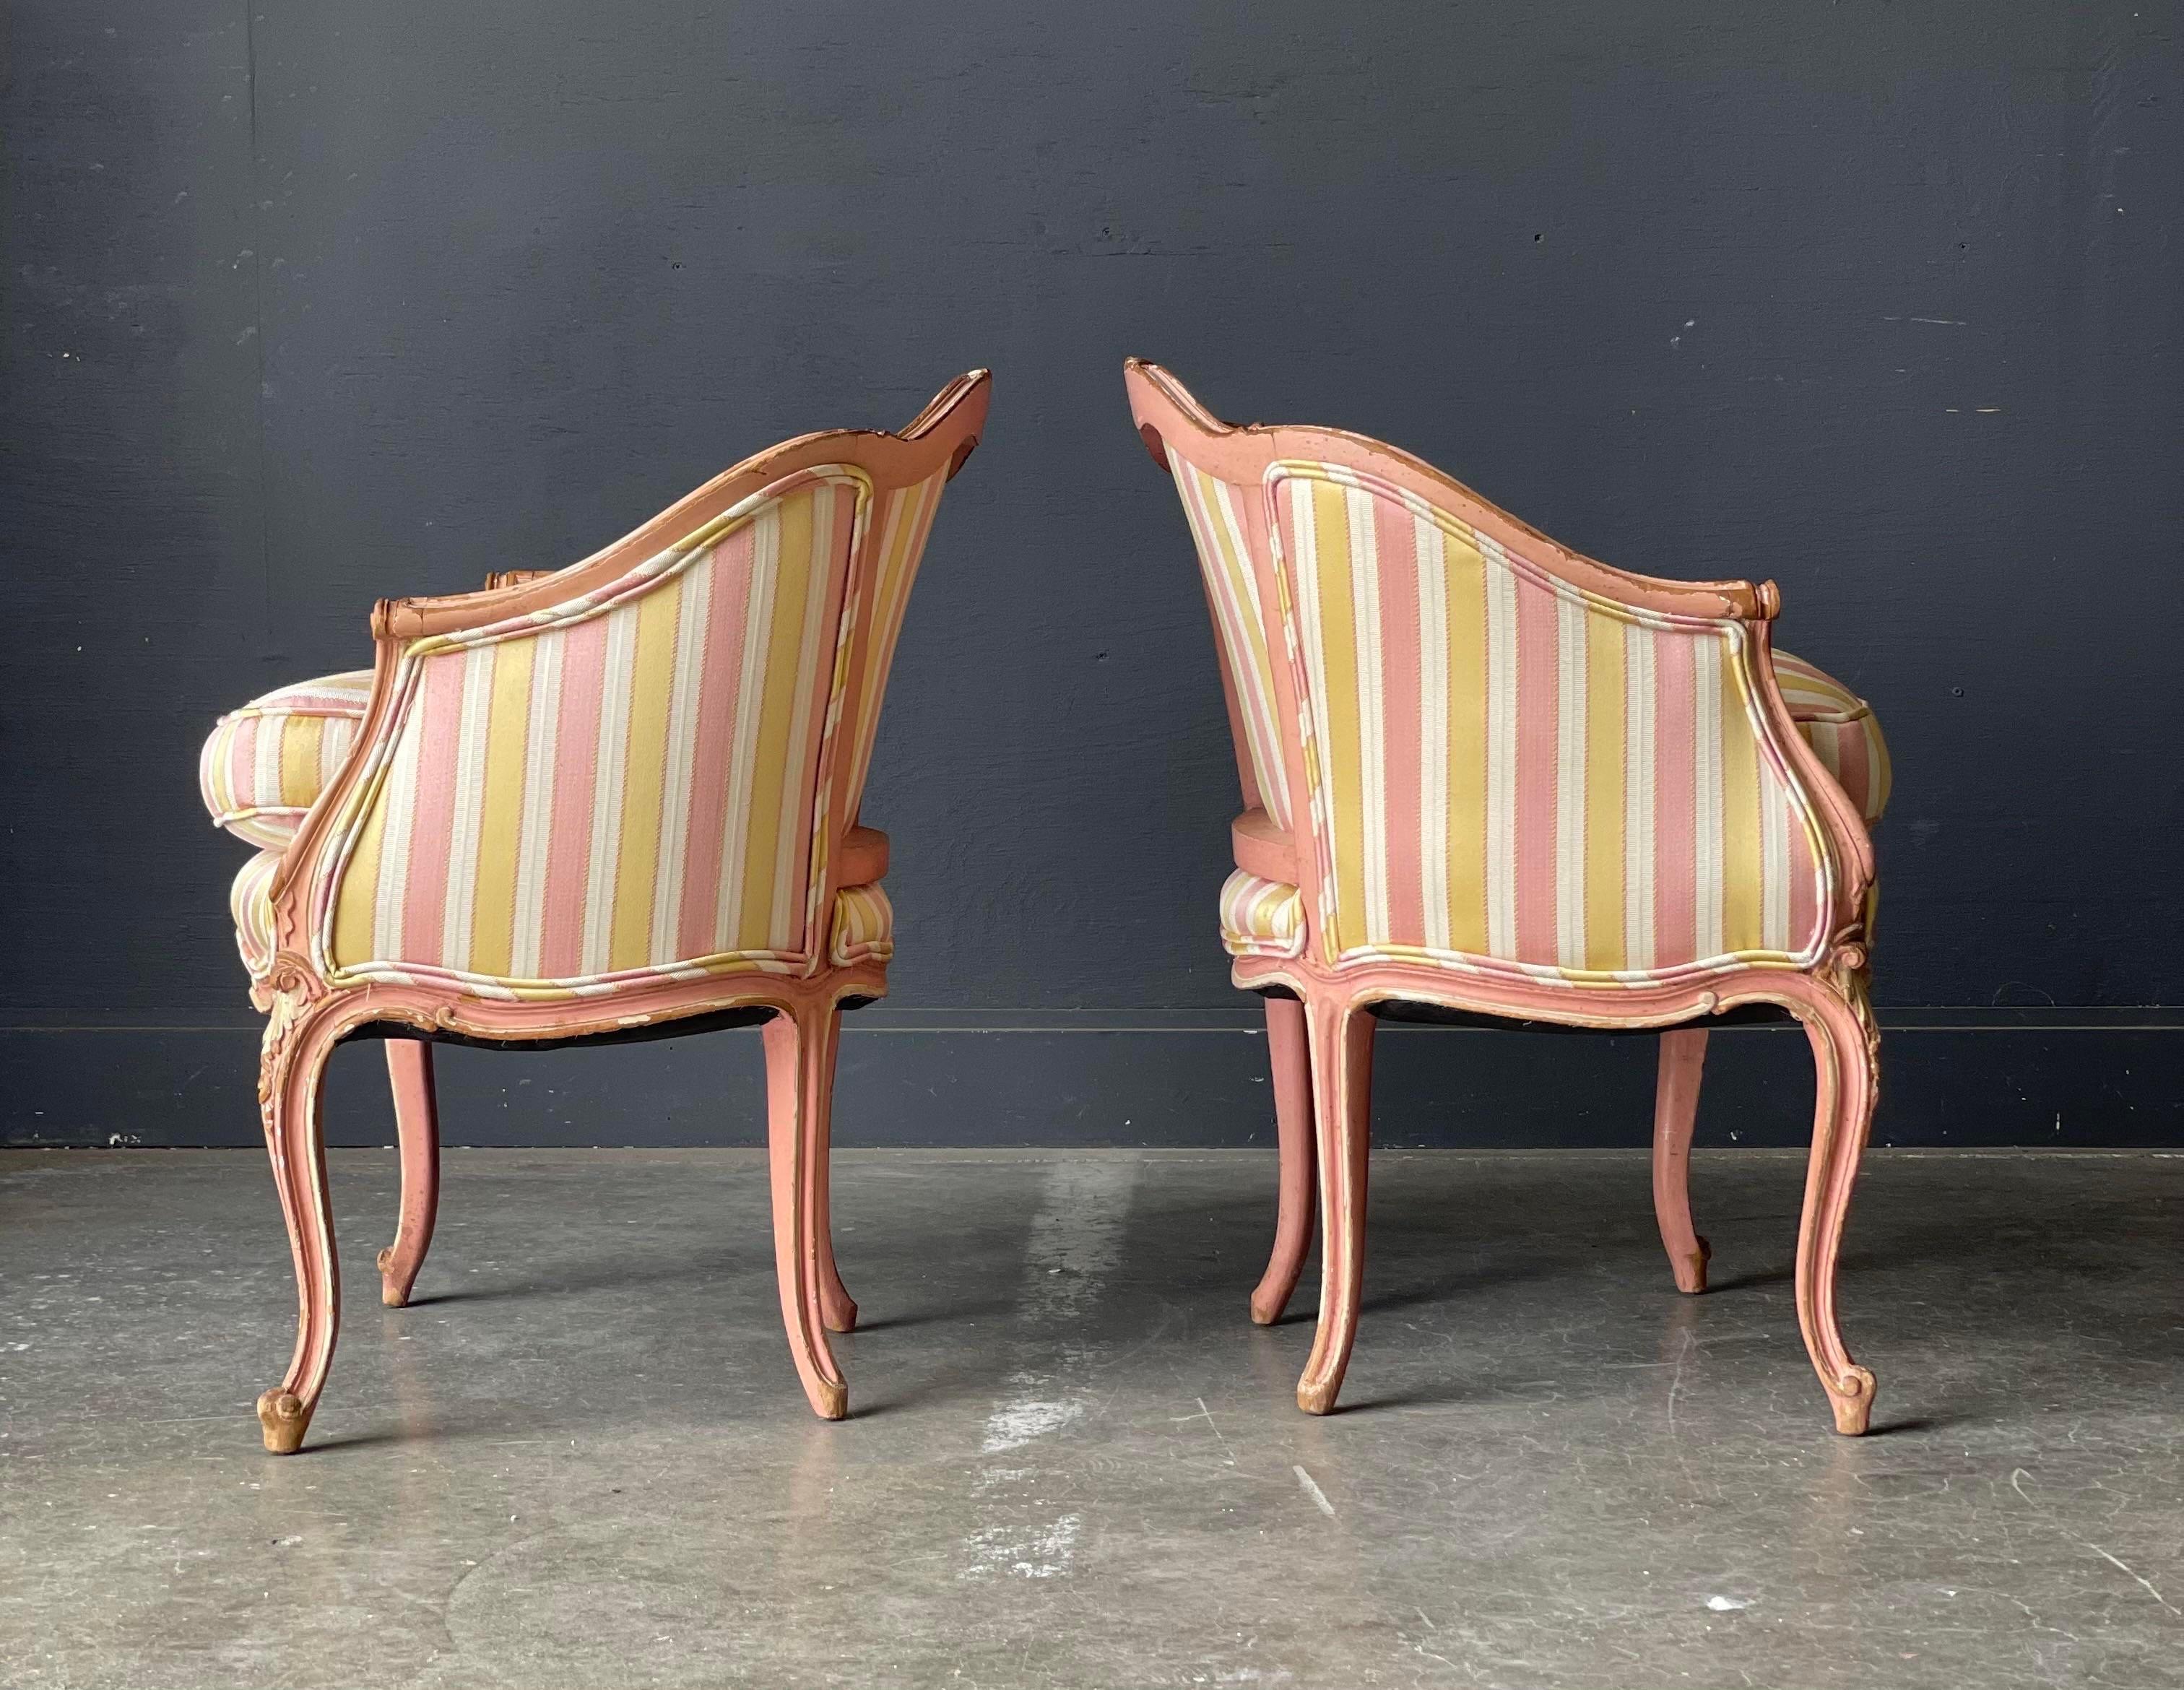 Fauteuils bergères de style Louis XV, parfaits pour votre salle de séjour. Les cadres en noyer avec une finition vieillie rose et blanche sont recouverts d'un tissu en soie mélangée rayé or, rose et blanc. Sculptures sur la traverse, les accoudoirs,